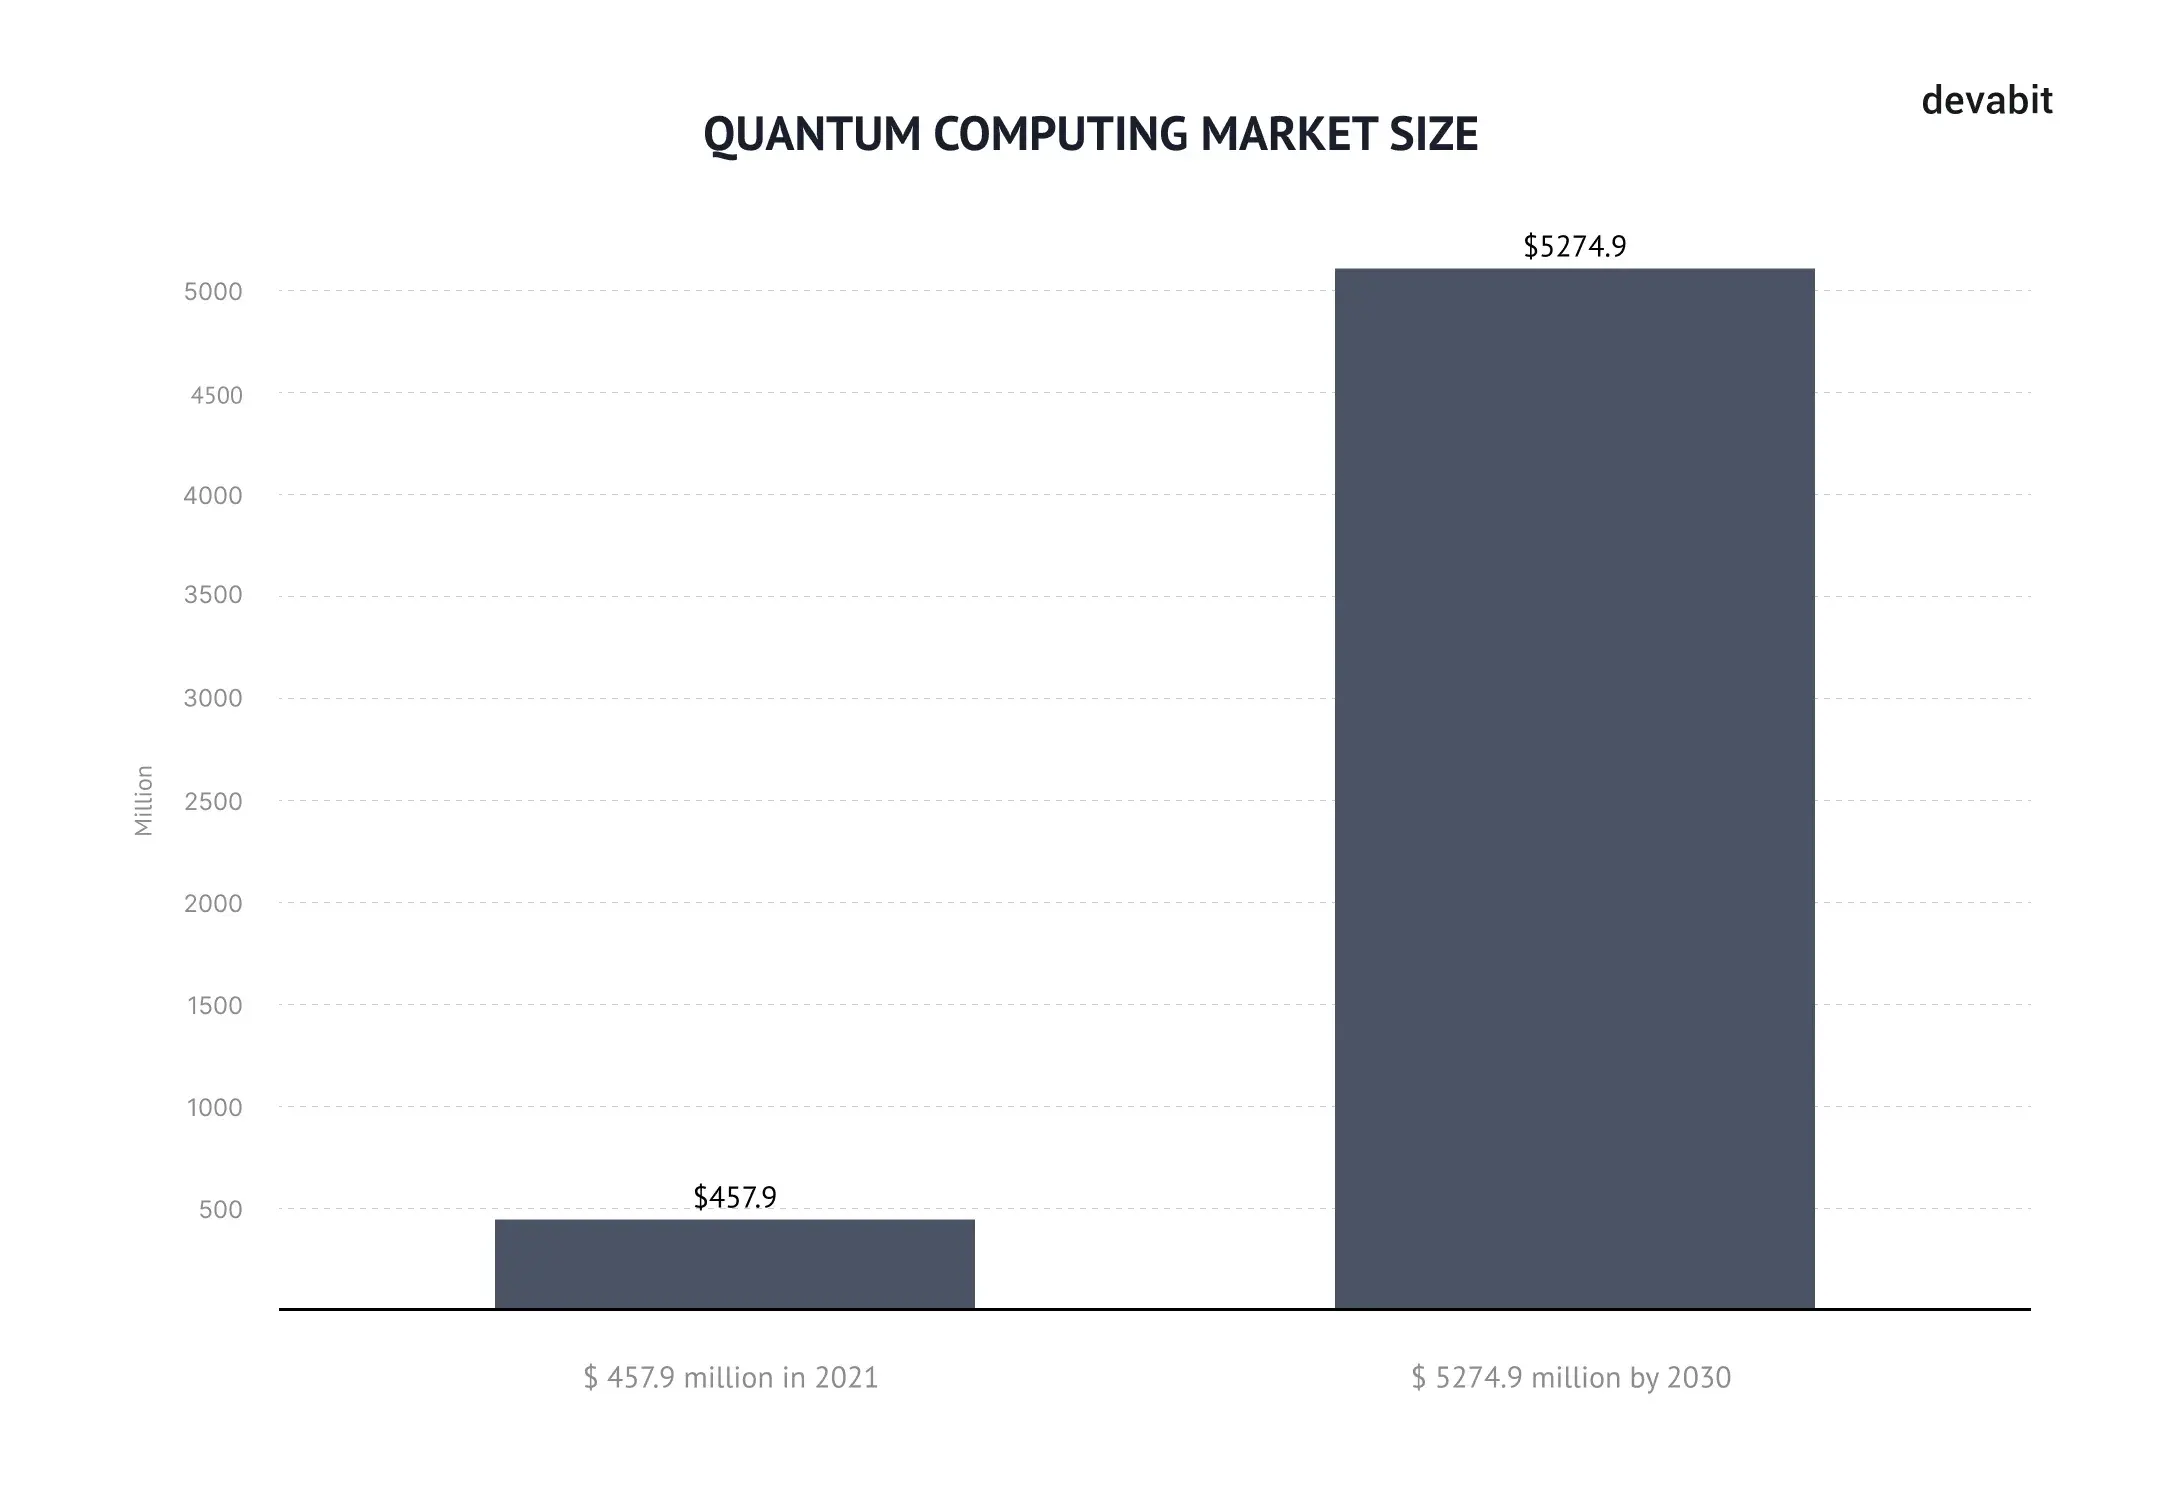 Top 10 emerging technologies 2022: Quantum computing market size by devabit